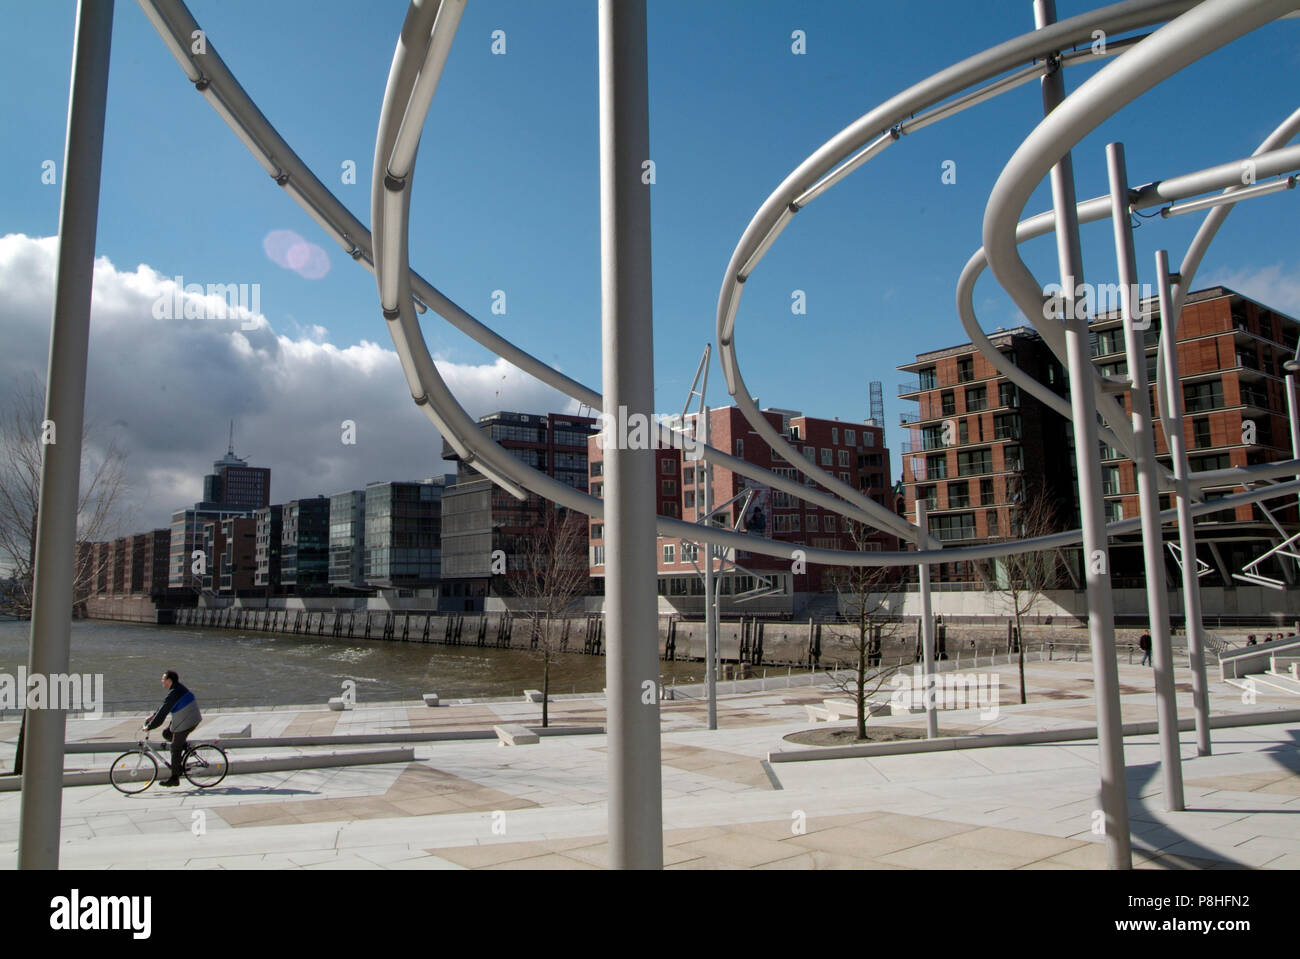 Amburgo, Hafen-City Grossbaustelle im Hamburger Hafen. Vasco da Gama-Platz mit moderner Platz-Beleuchtung, moderner Büro-Architektur. Foto Stock